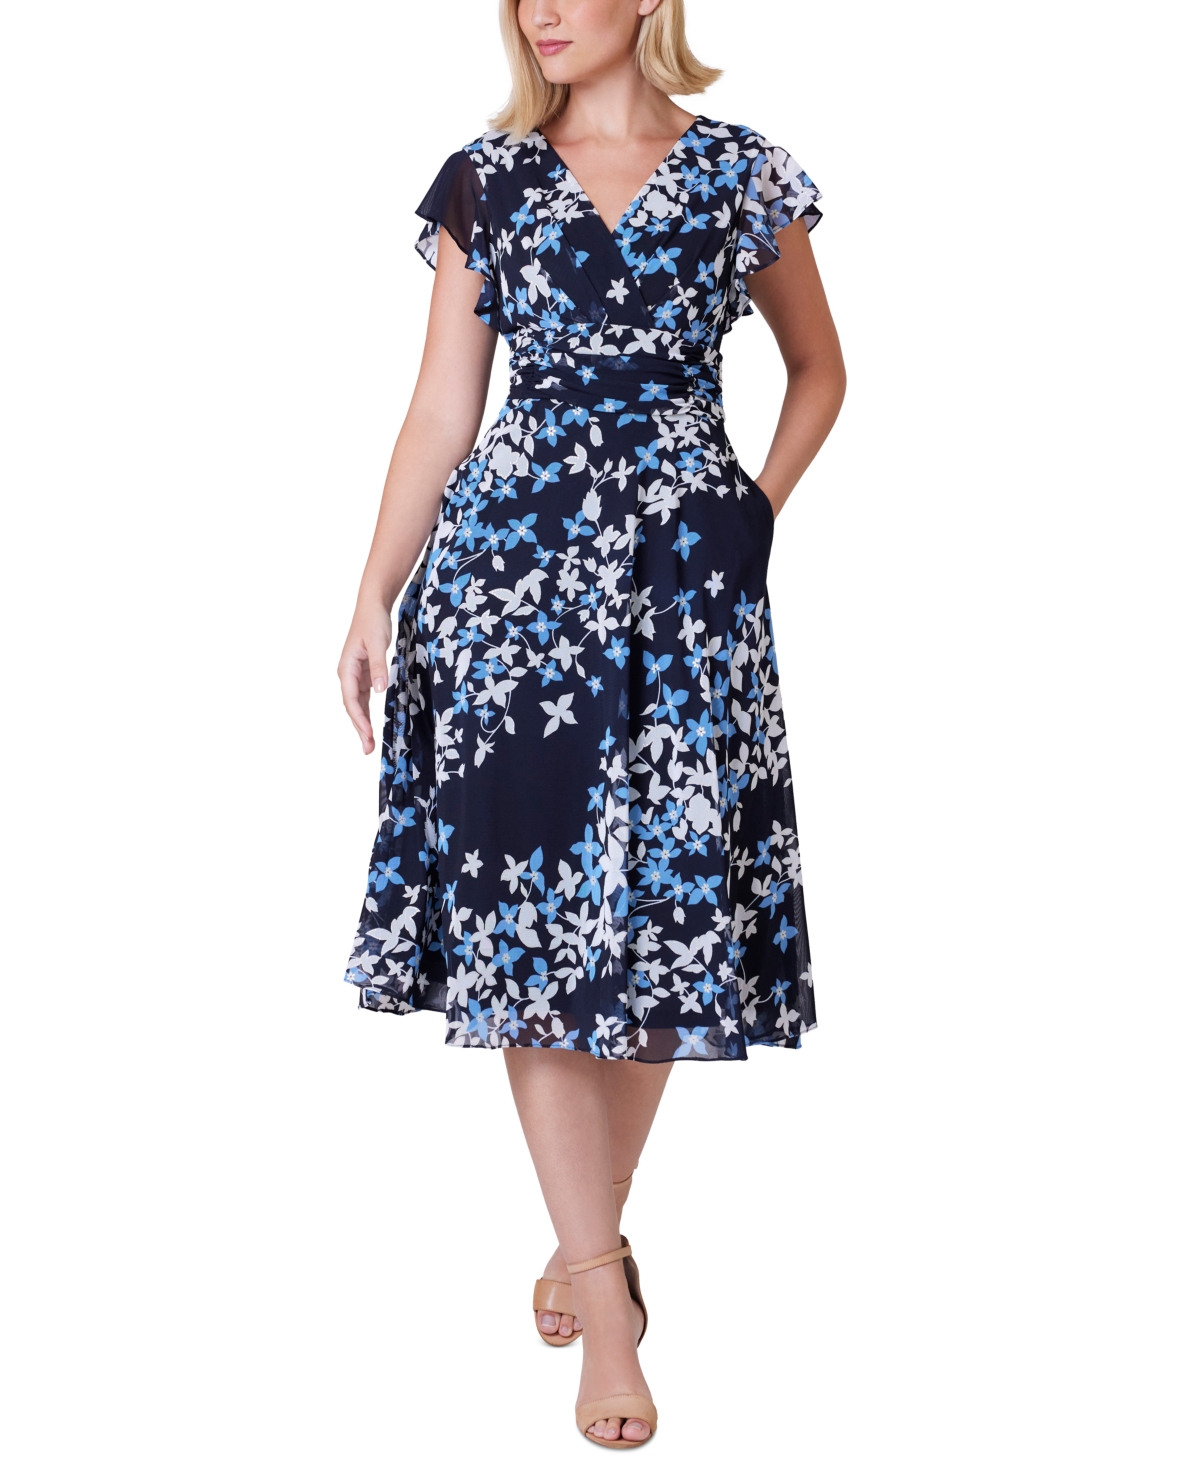 Women's Floral-Print Empire-Waist Dress - Nvy Blue